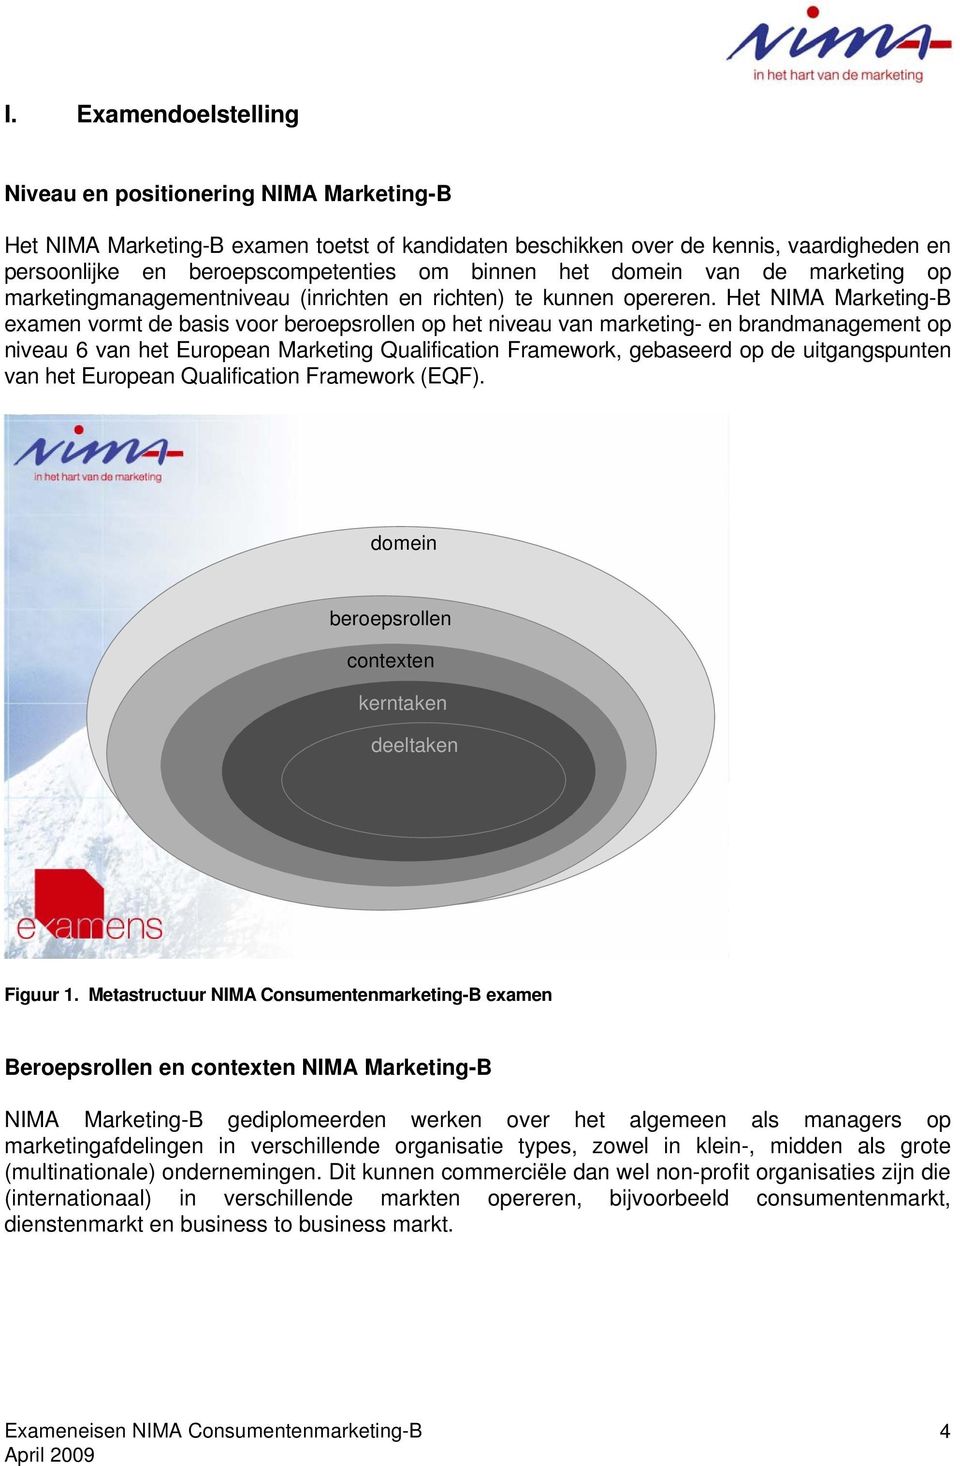 Het NIMA Marketing-B examen vormt de basis voor beroepsrollen op het niveau van marketing- en brandmanagement op niveau 6 van het European Marketing Qualification Framework, gebaseerd op de